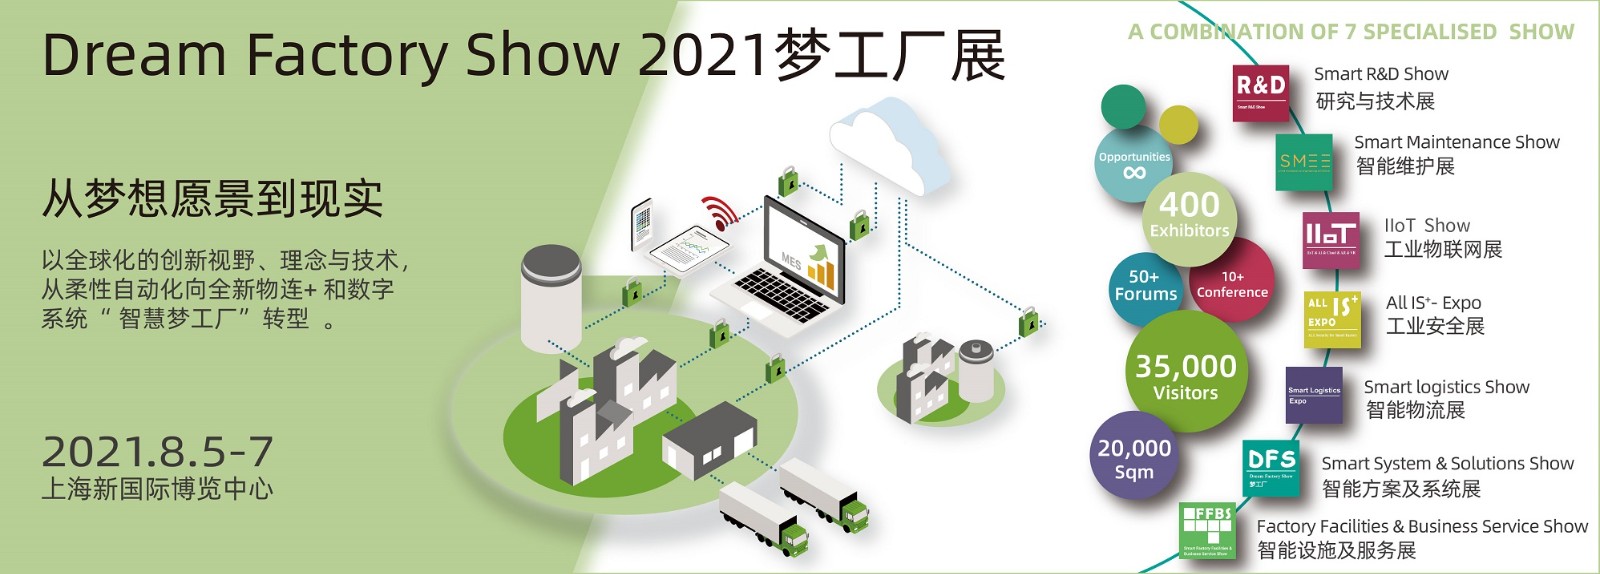 DFS 2021 banner-WeChat-01.jpg